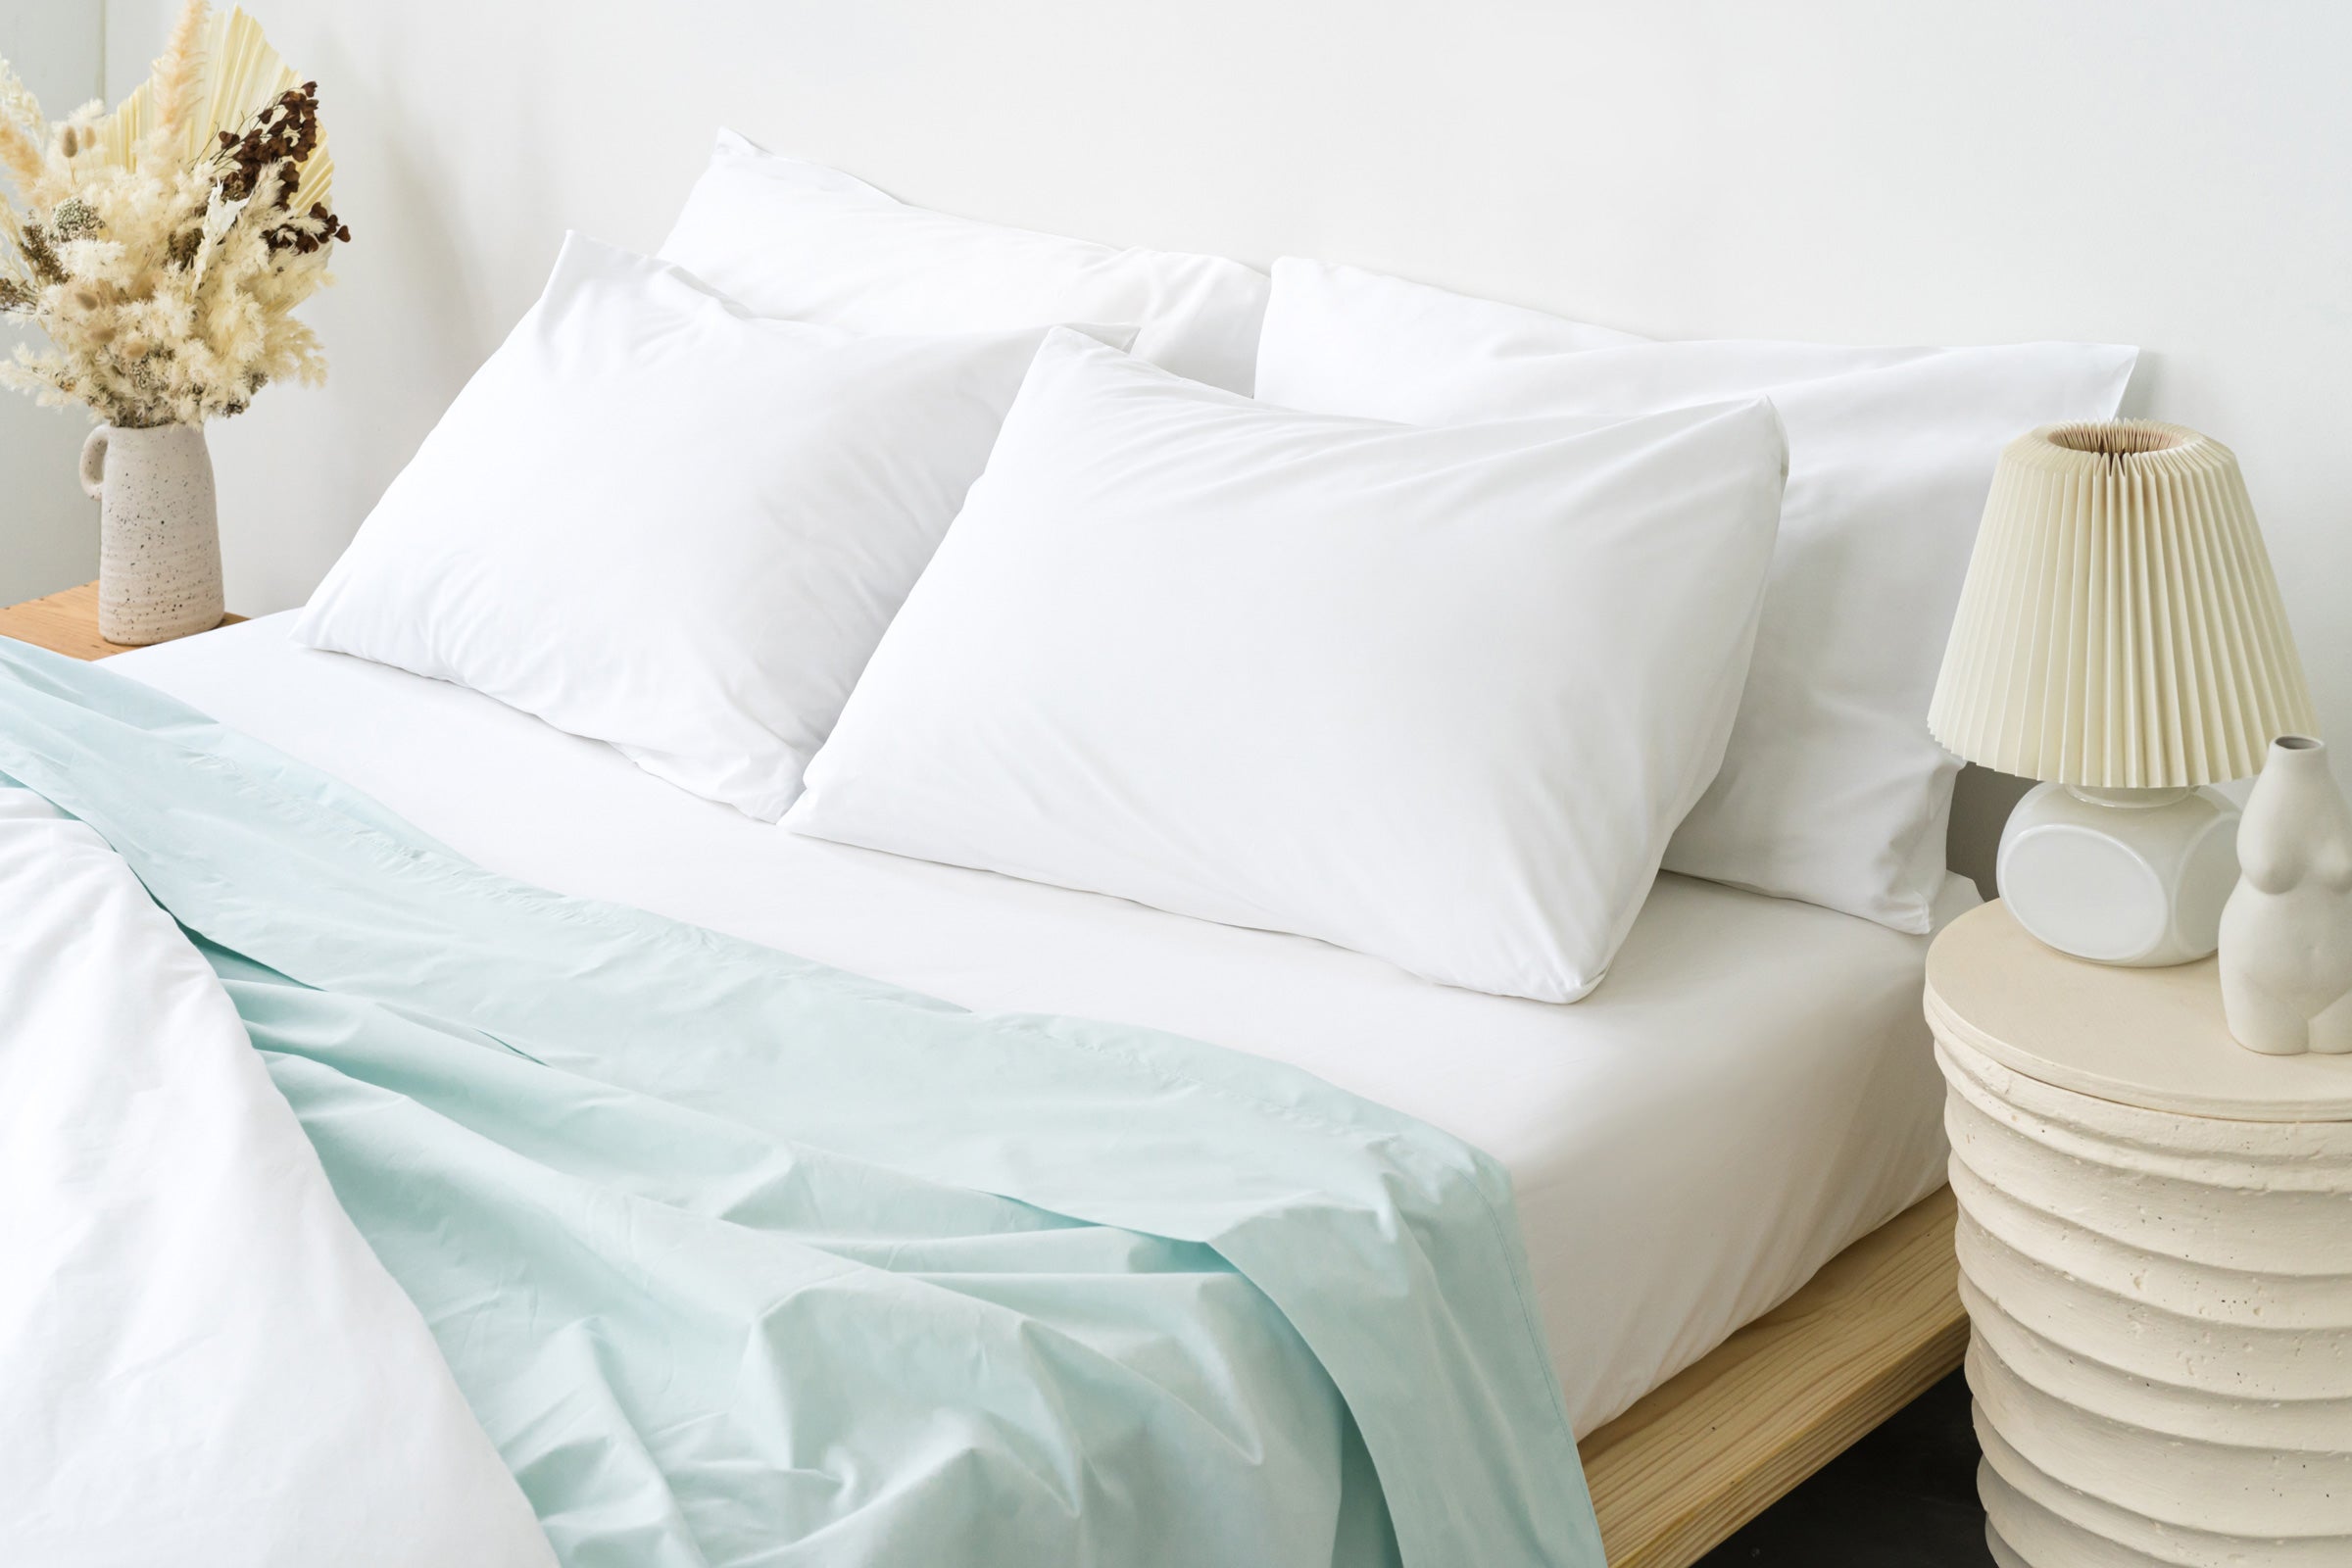 crisp-white-fitted-sheet-duvet-cover-pillowcase-pair-mint-flat-sheet-by-sojao.jpg